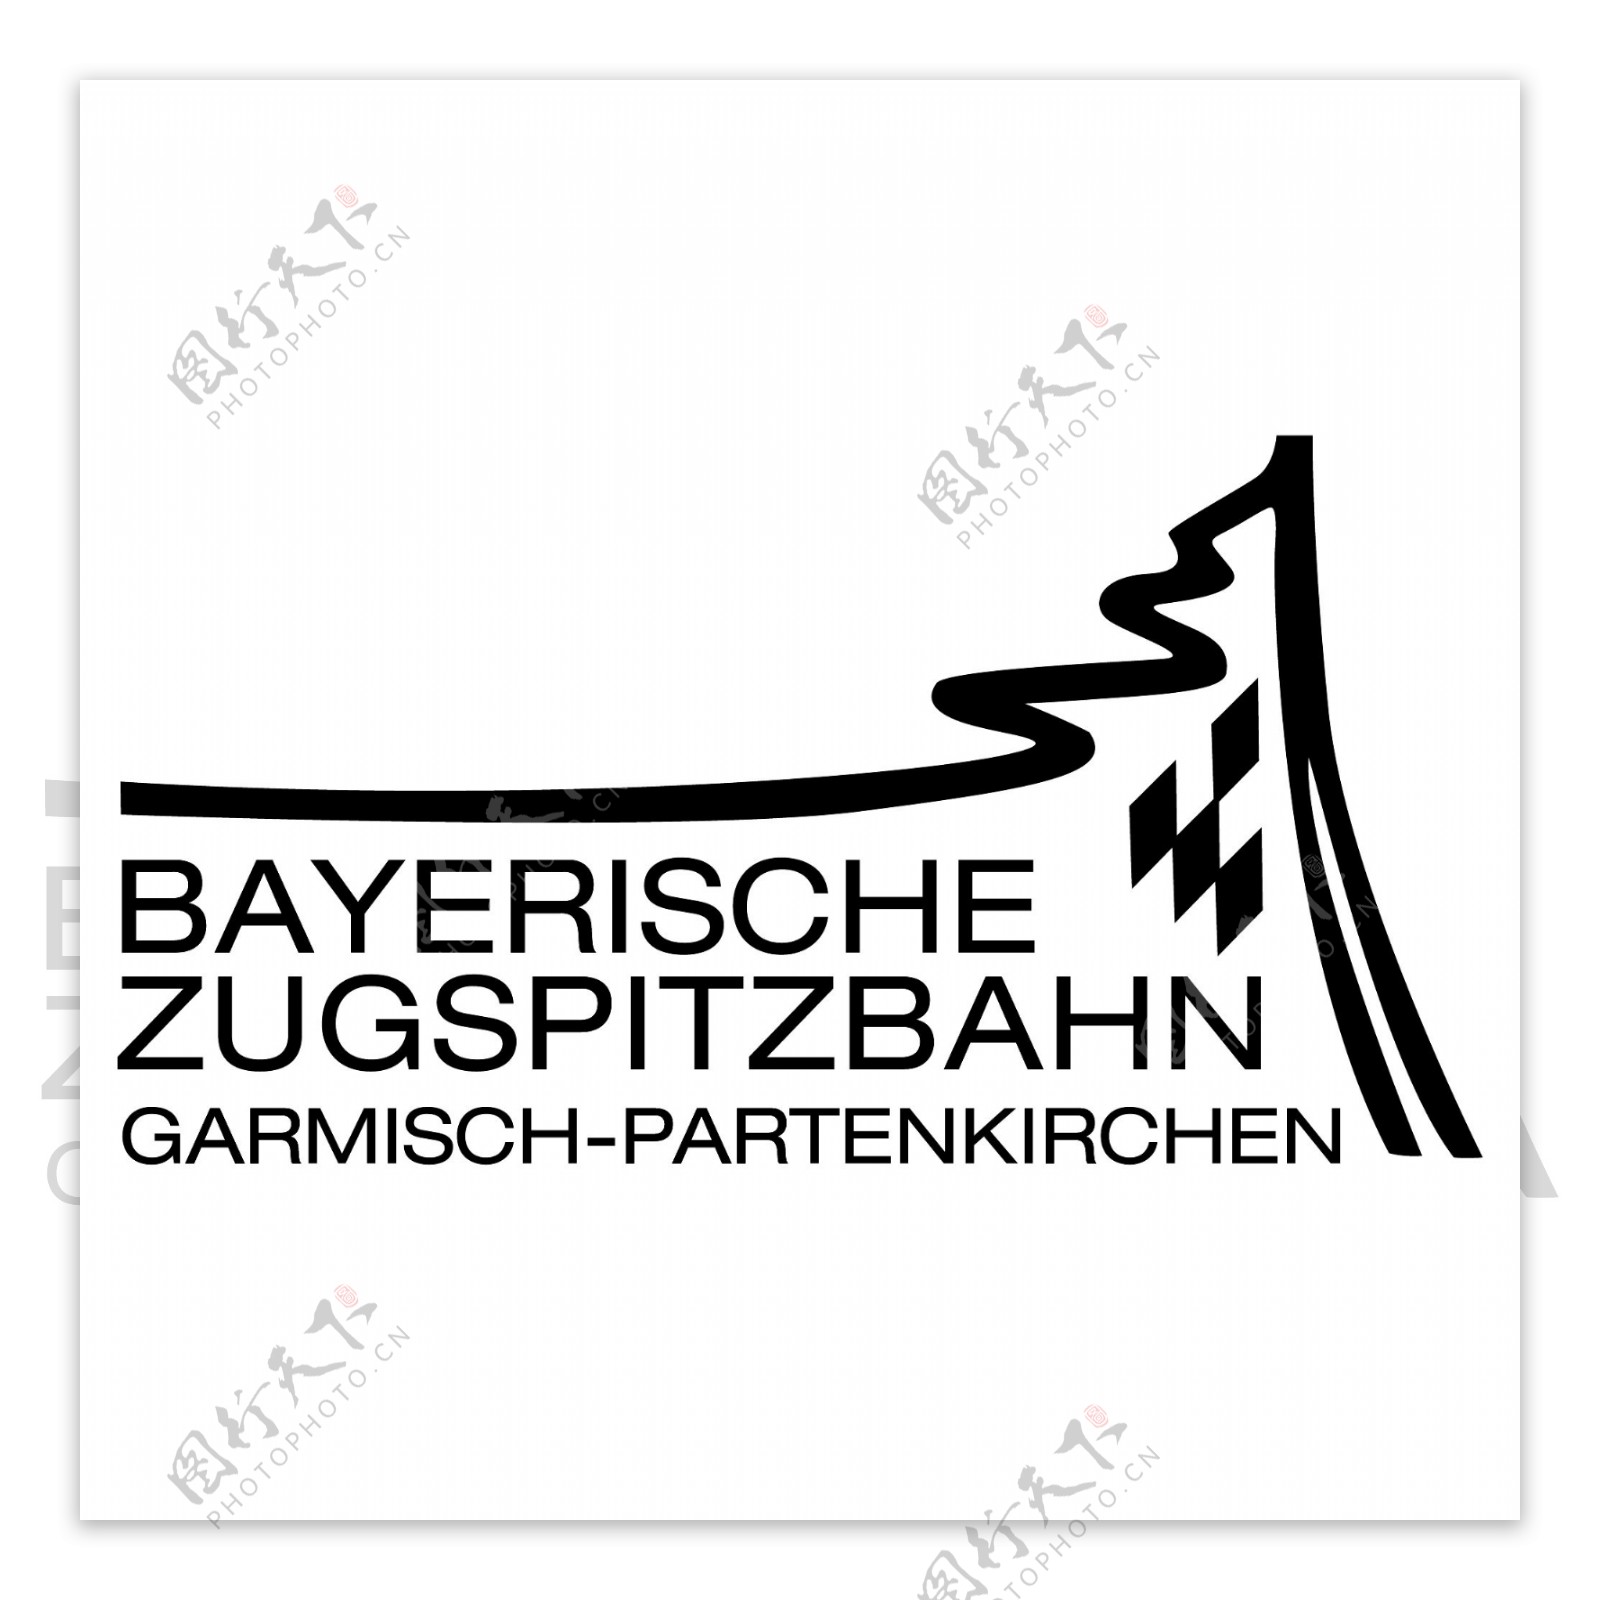 BayerischeZugspitzbahnlogo设计欣赏BayerischeZugspitzbahn旅行社标志下载标志设计欣赏